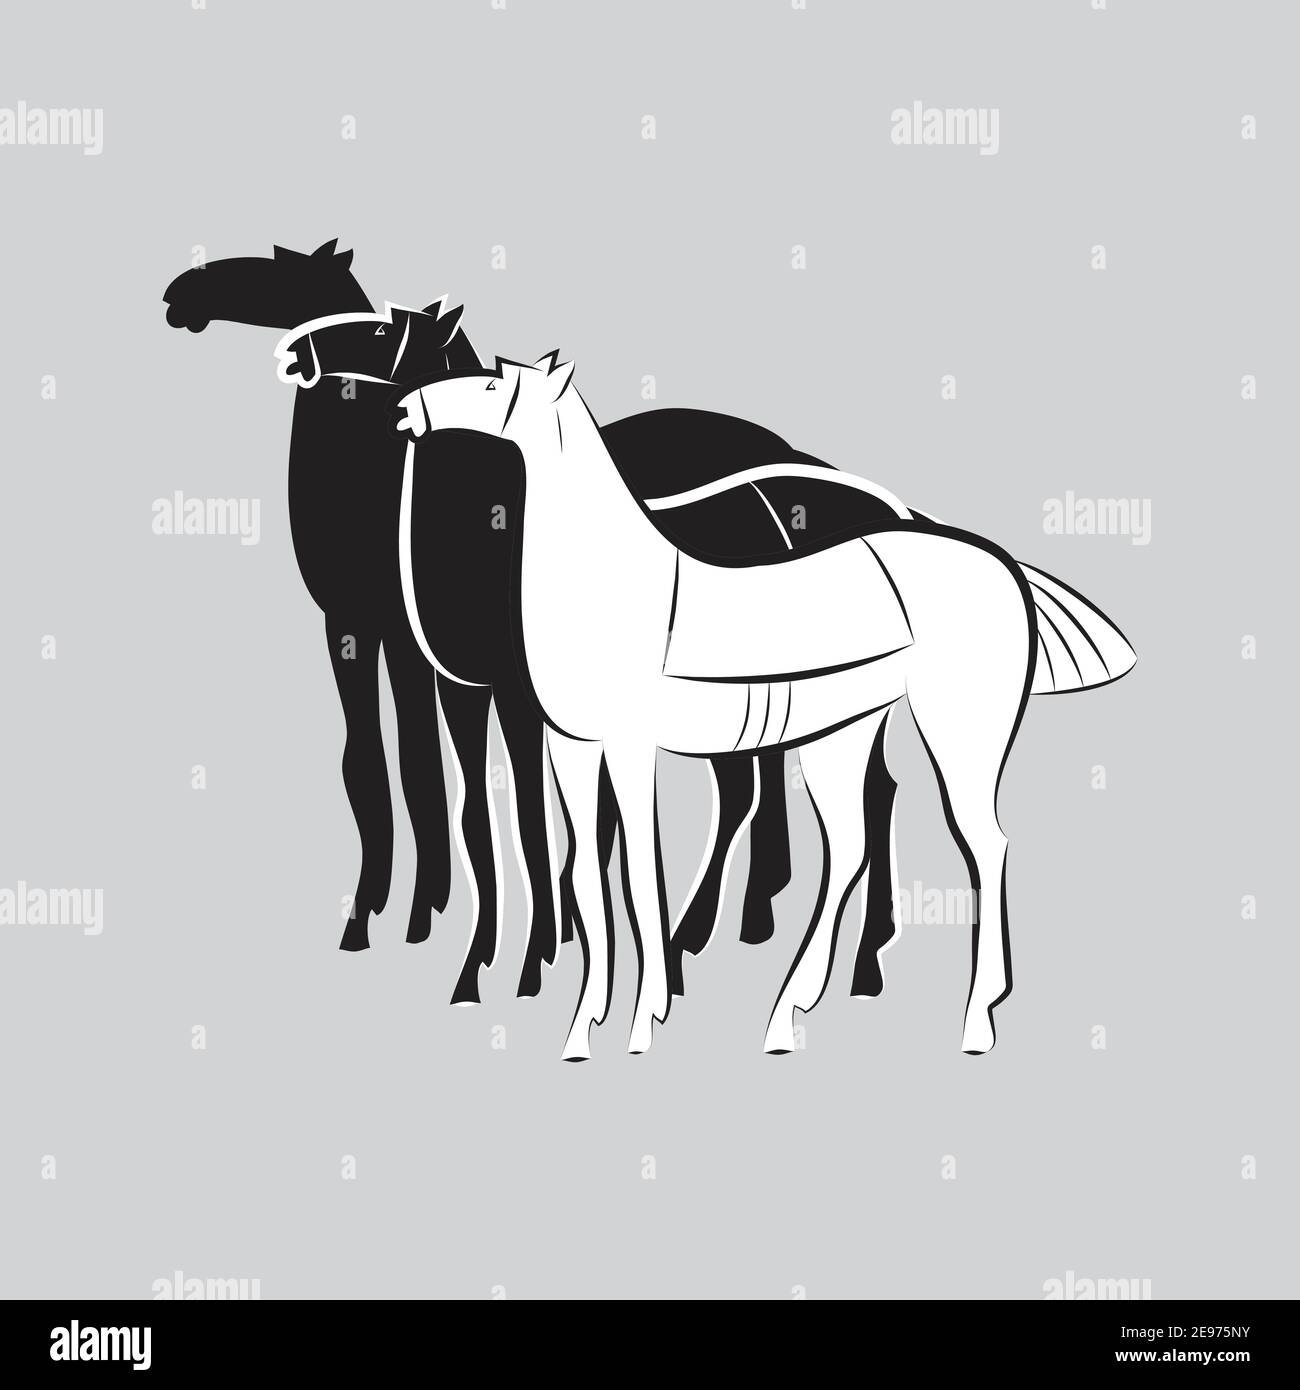 Trois chevaux sur pied. Silhouettes noir et blanc sur fond gris. Style minimaliste. Logo cheval. Conception pour ferme stable Illustration de Vecteur